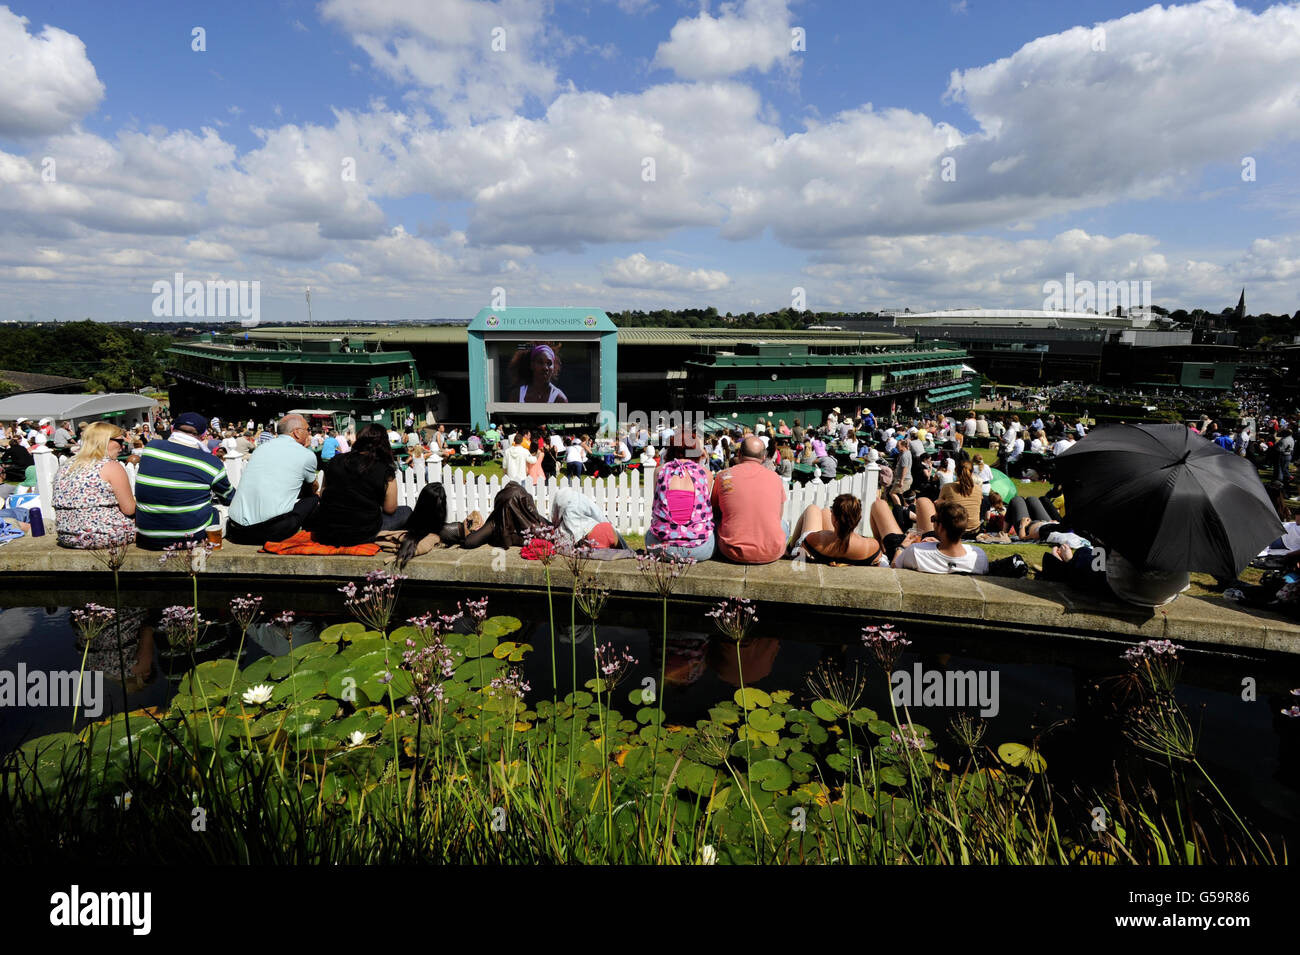 Gli appassionati di tennis godono del sole mentre guardano il grande schermo sul Monte Murray durante il giorno dieci dei campionati di Wimbledon 2012 all'All England Lawn Tennis Club, Wimbledon. Foto Stock